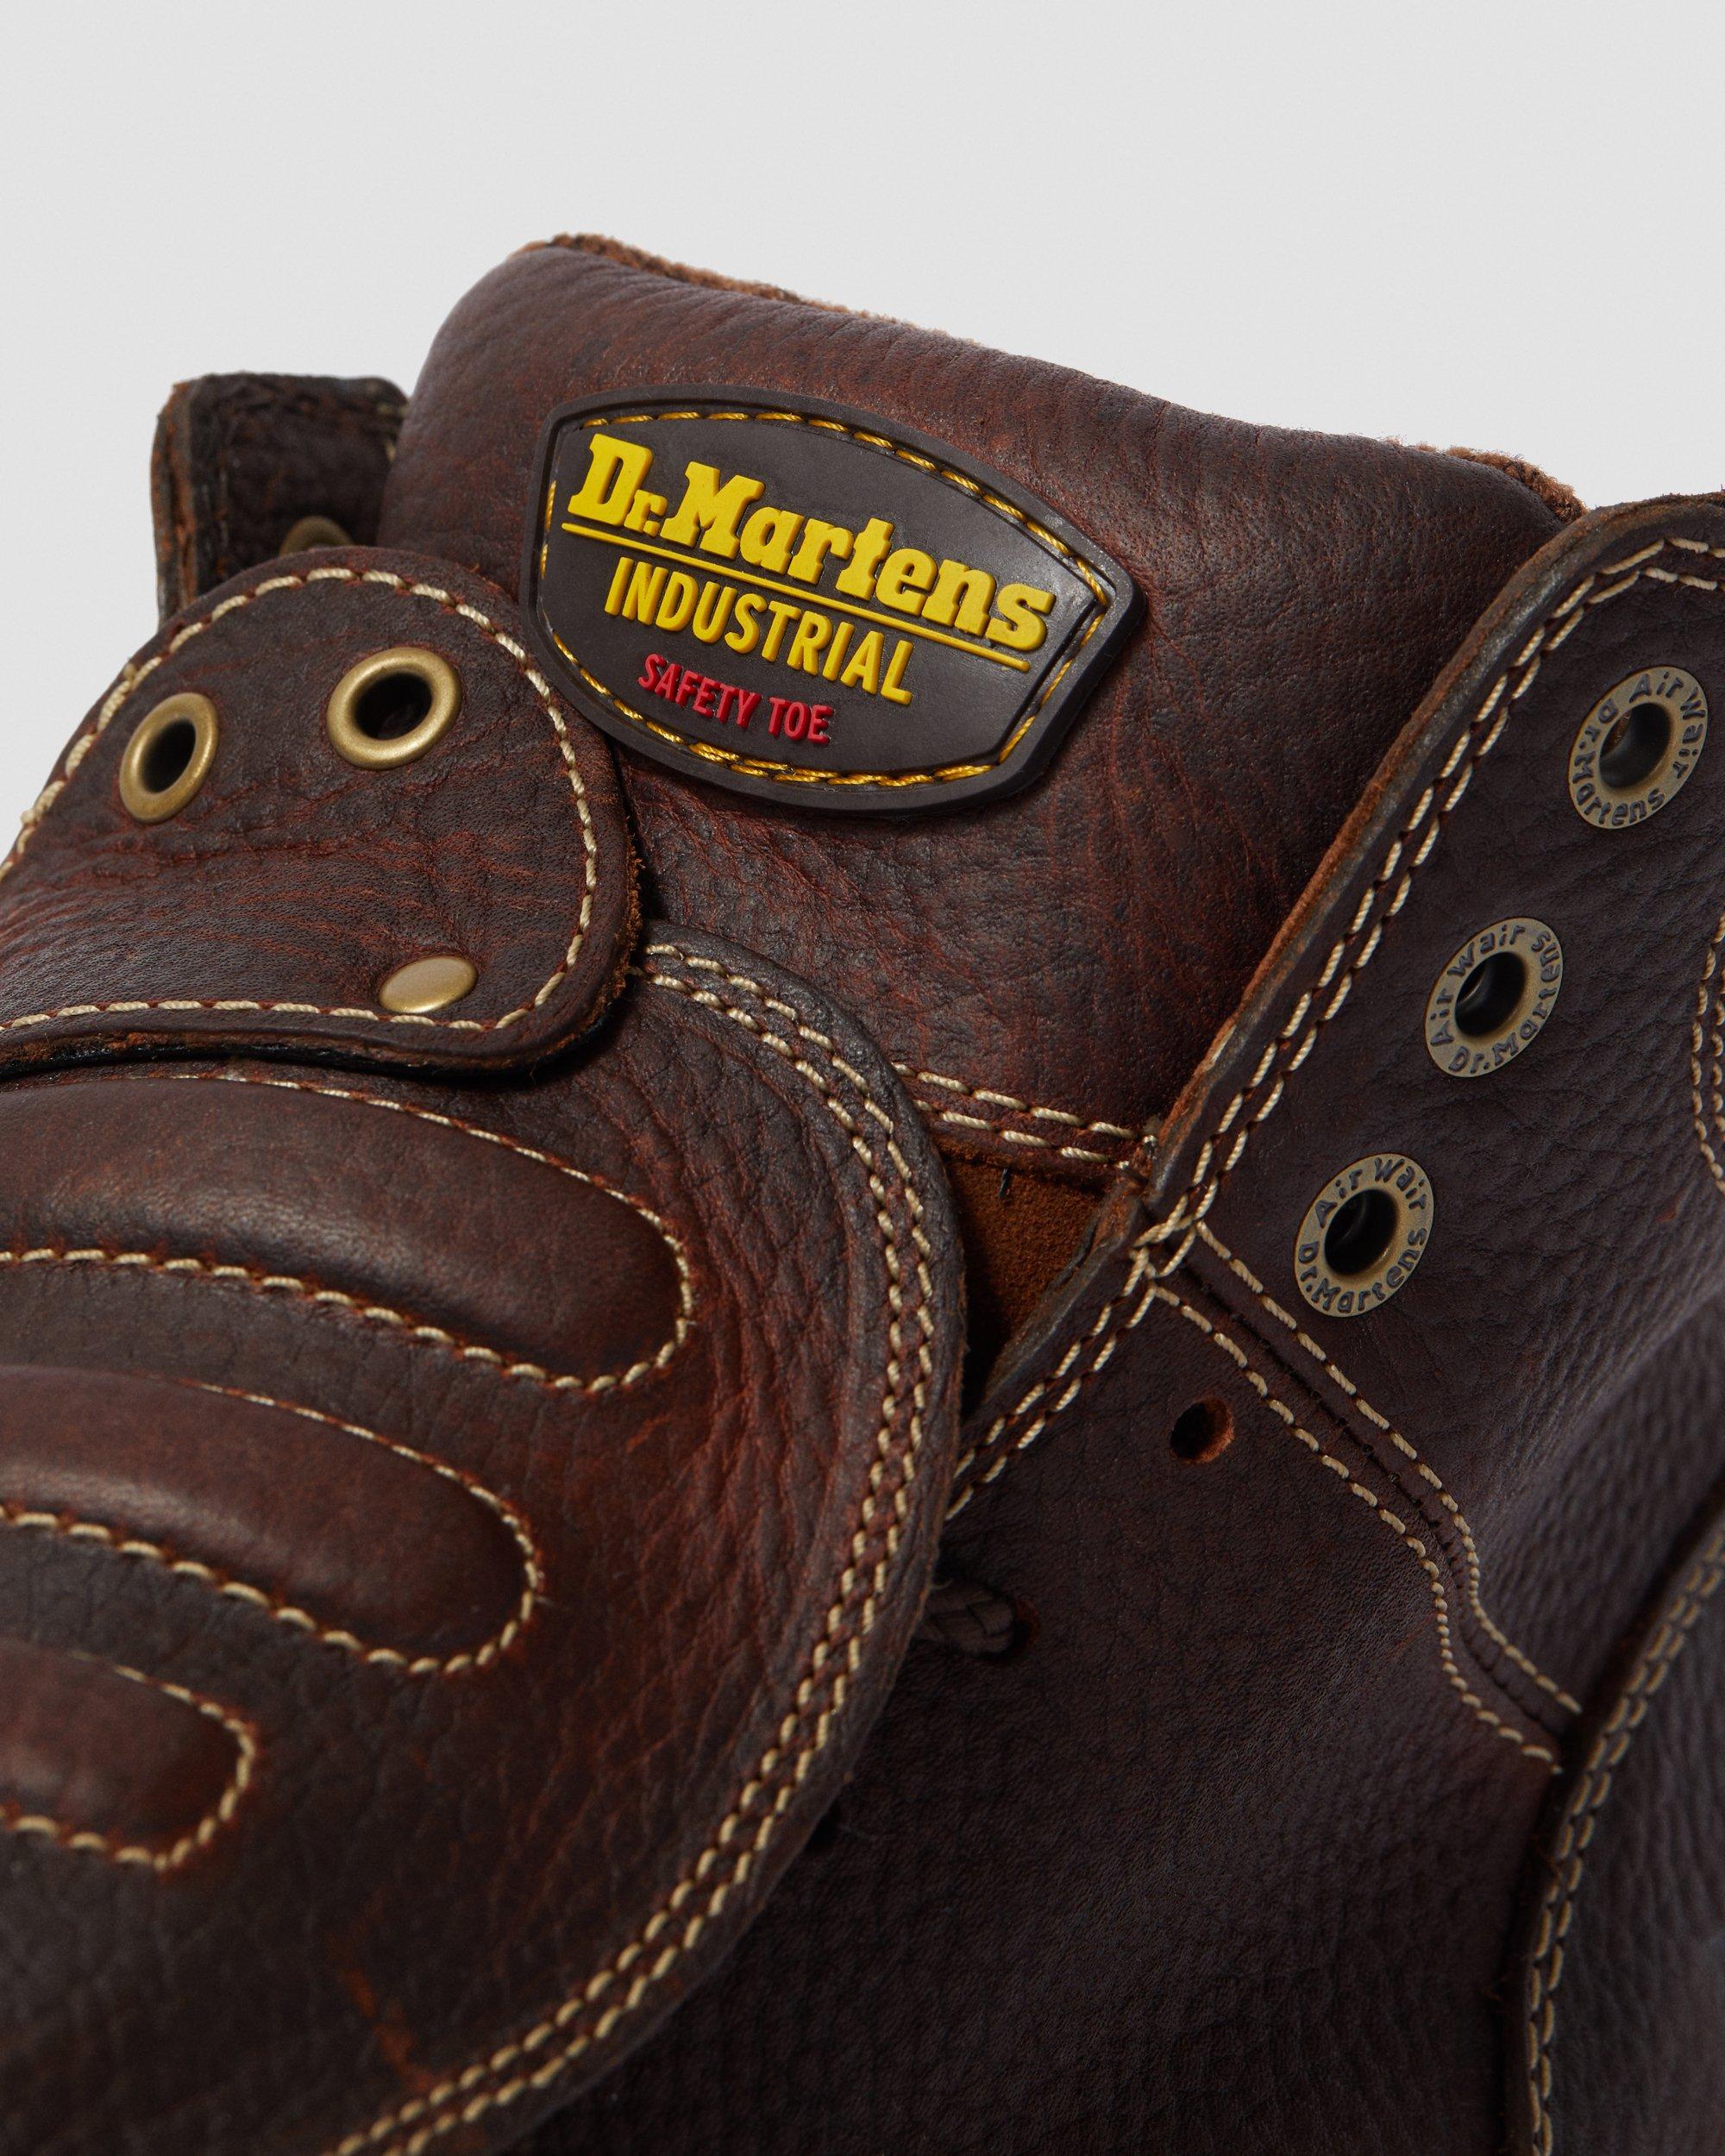 DR MARTENS Ironbridge Leather Met Guard Work Boots